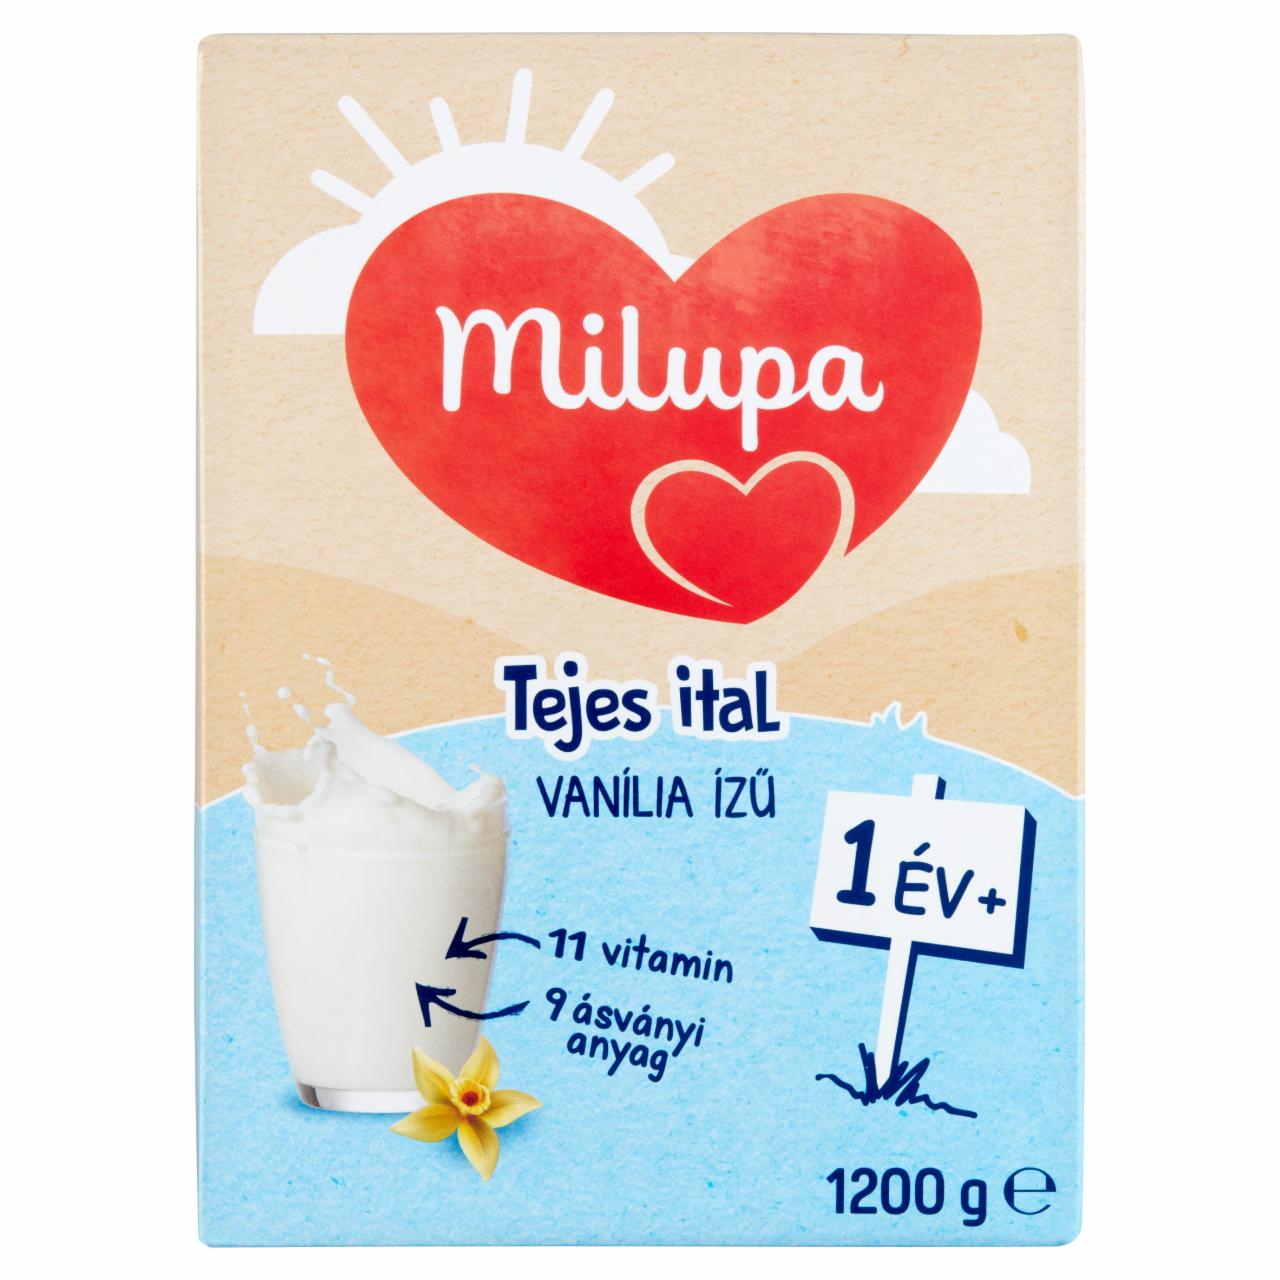 Képek - Milupa vanília ízű tejes ital 1 év+ 2 x 600 g (1200 g)